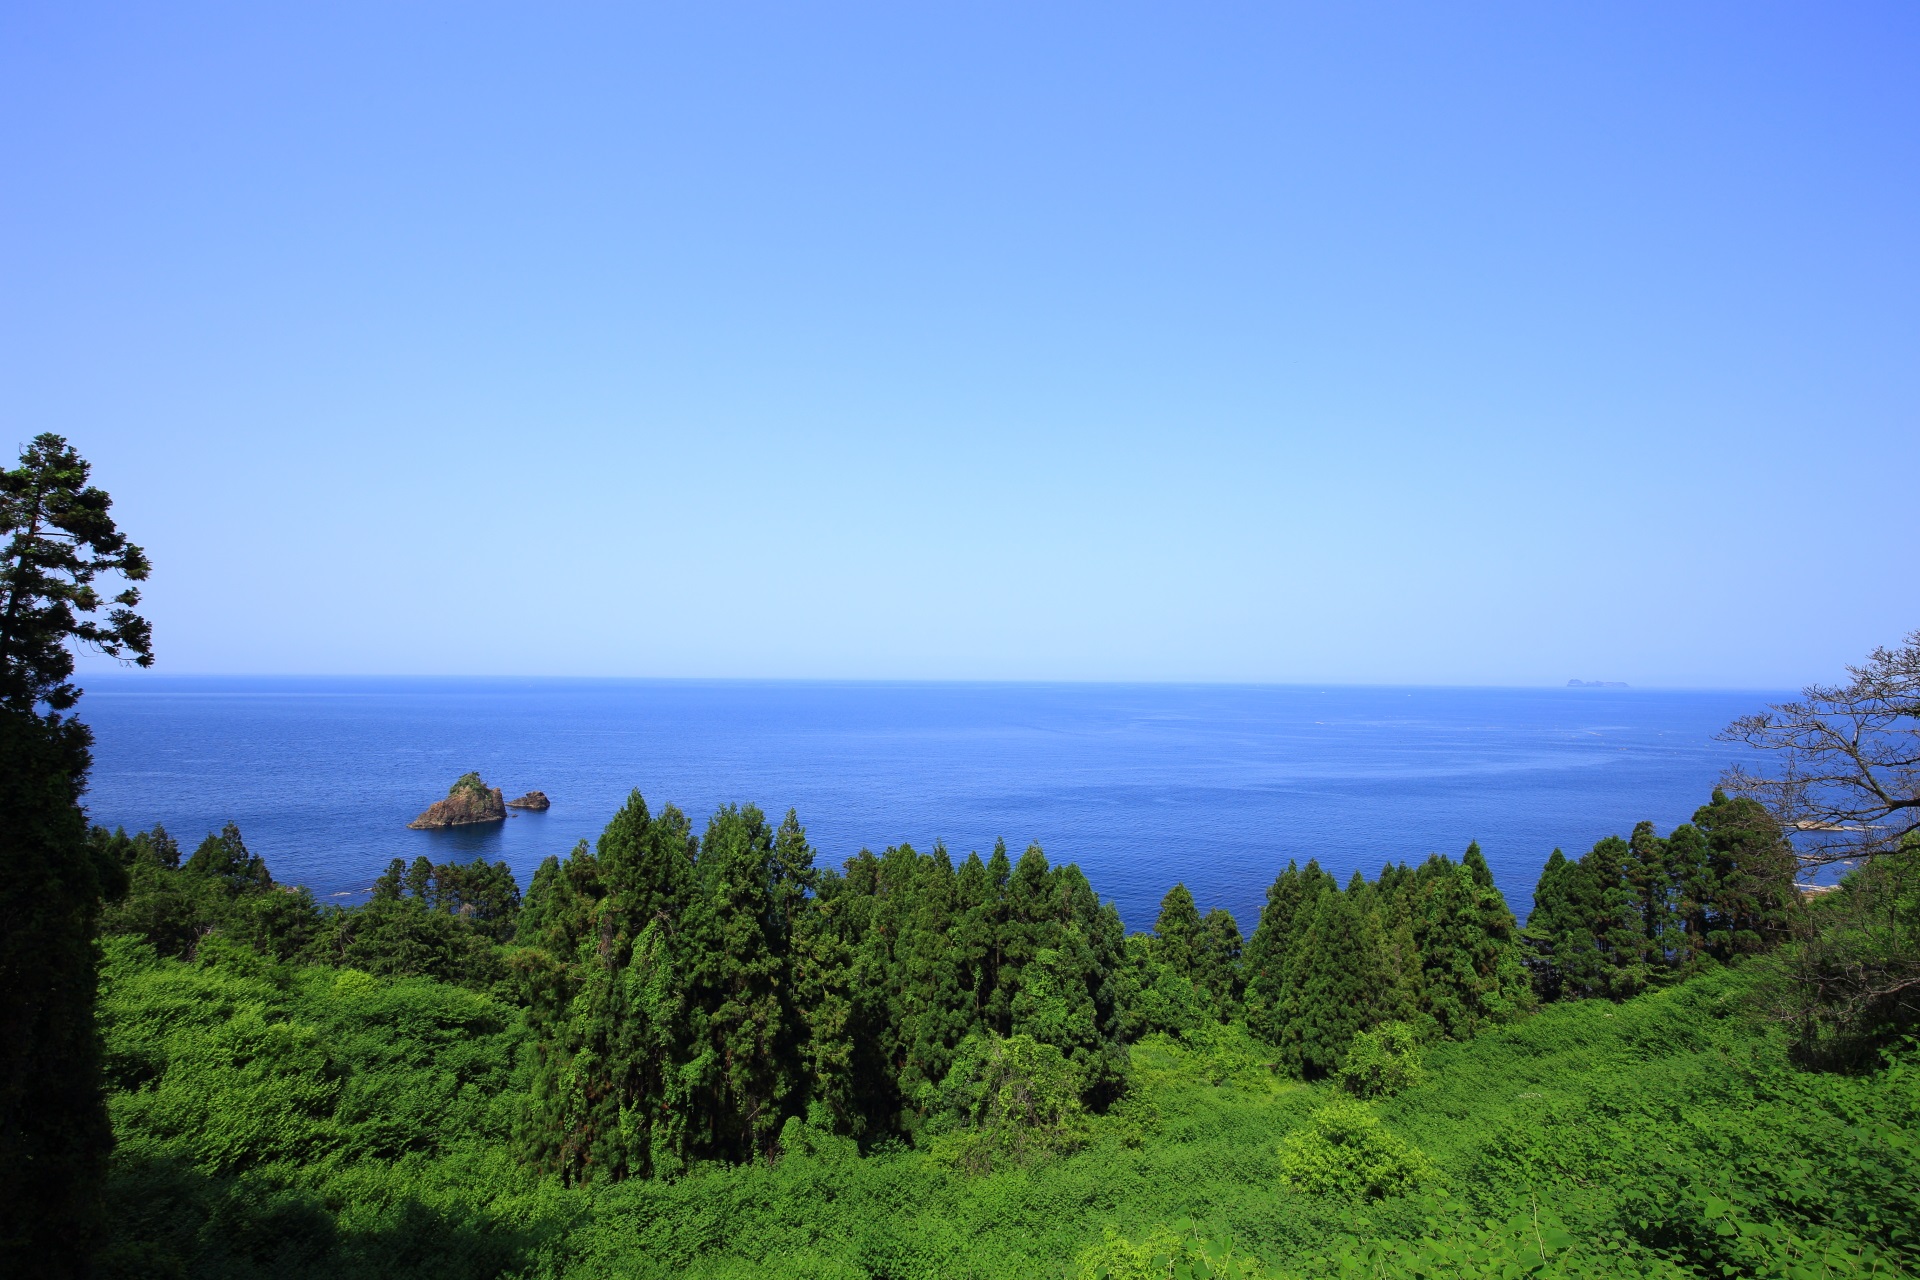 のろせ海岸の緑溢れる海岸線と広がる穏やかな青い日本海